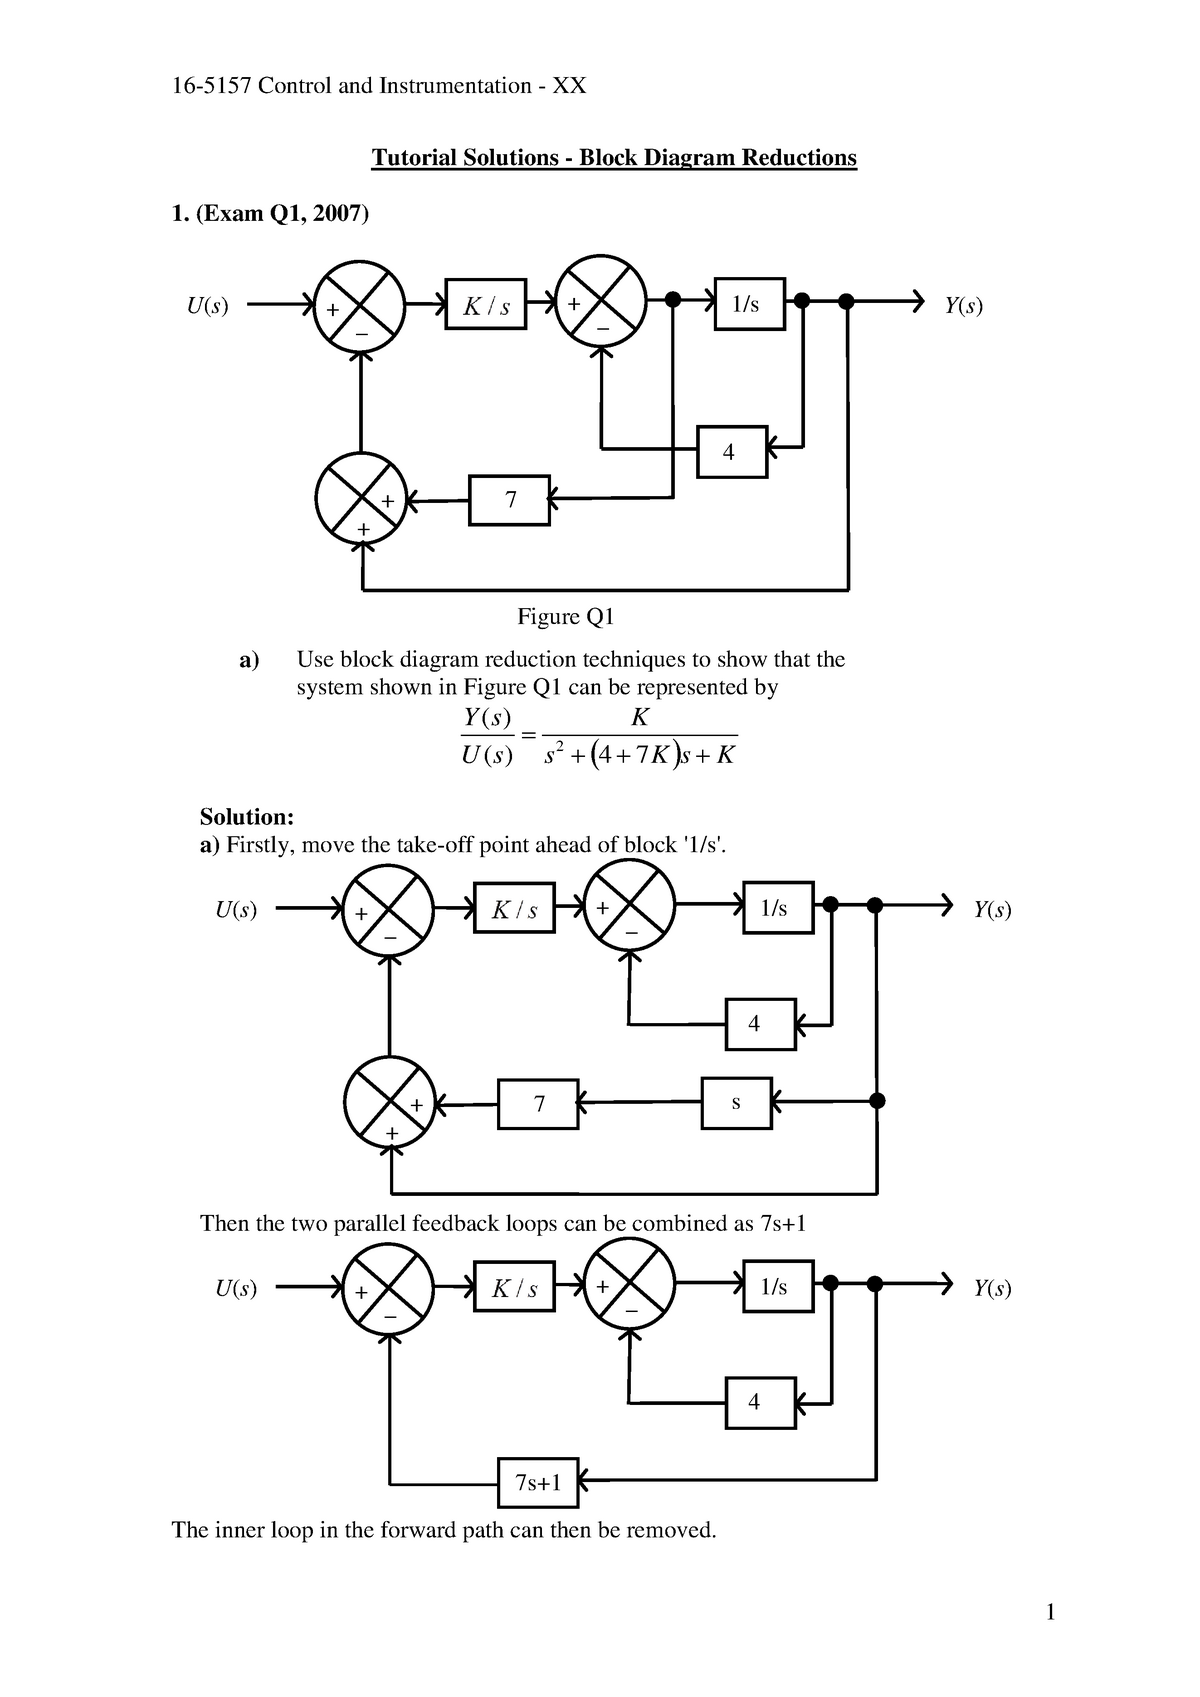 16-5157-tutorial-2-1-block-diagram-reduction-solutions-tutorial